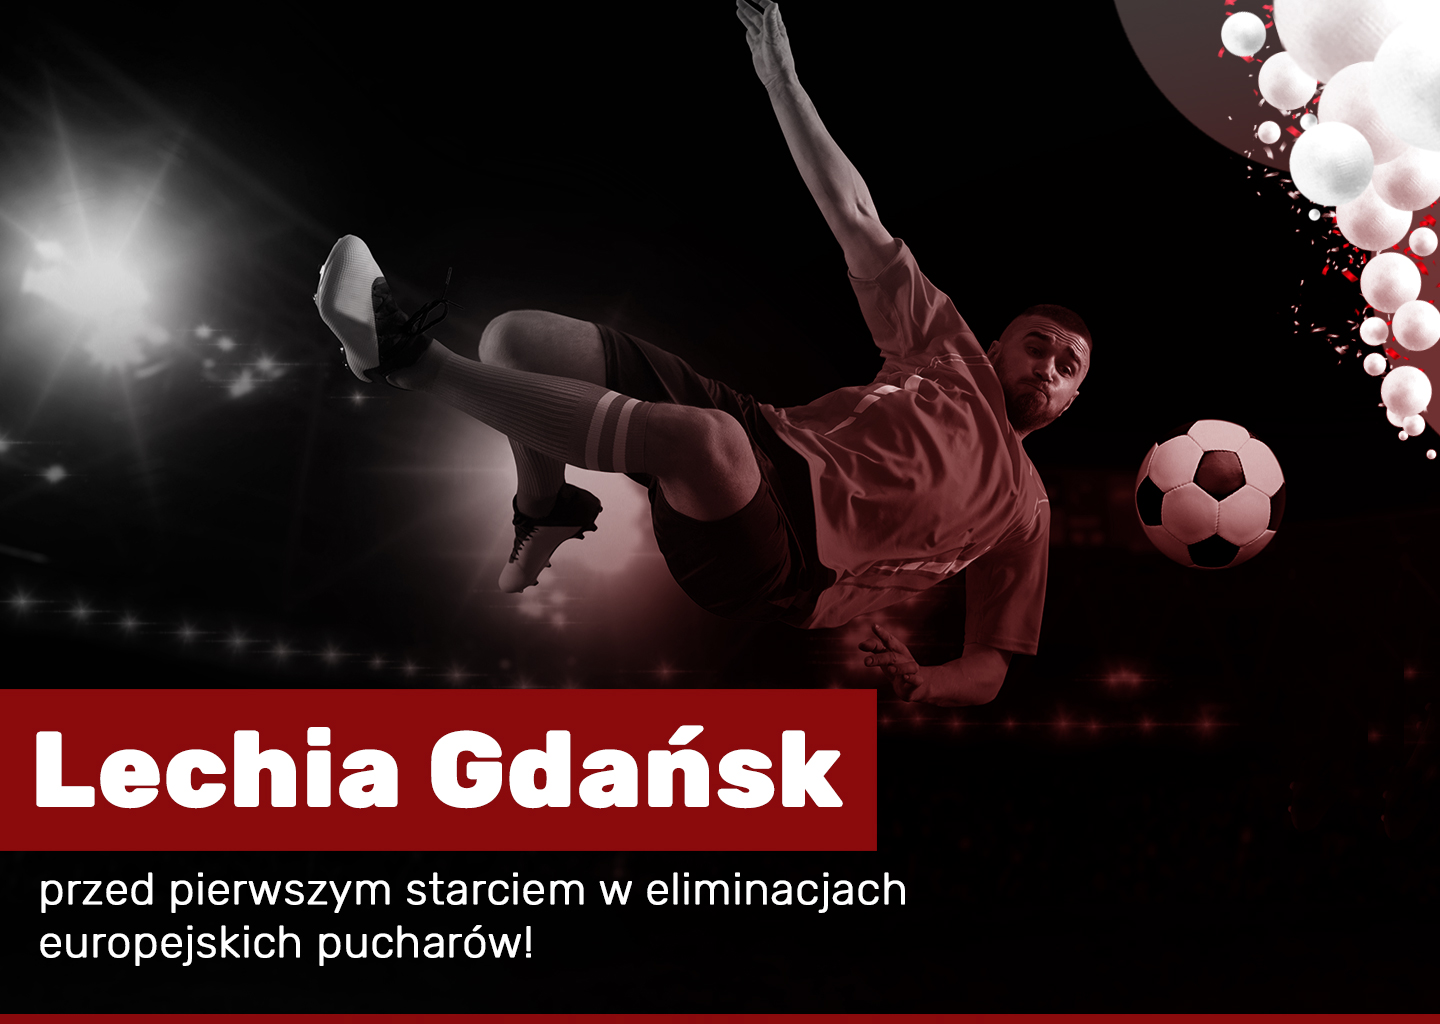 lechia gdansk superbet zaklady bukmacherskie live Lechia Gdańsk przed pierwszym starciem w eliminacjach europejskich pucharów!